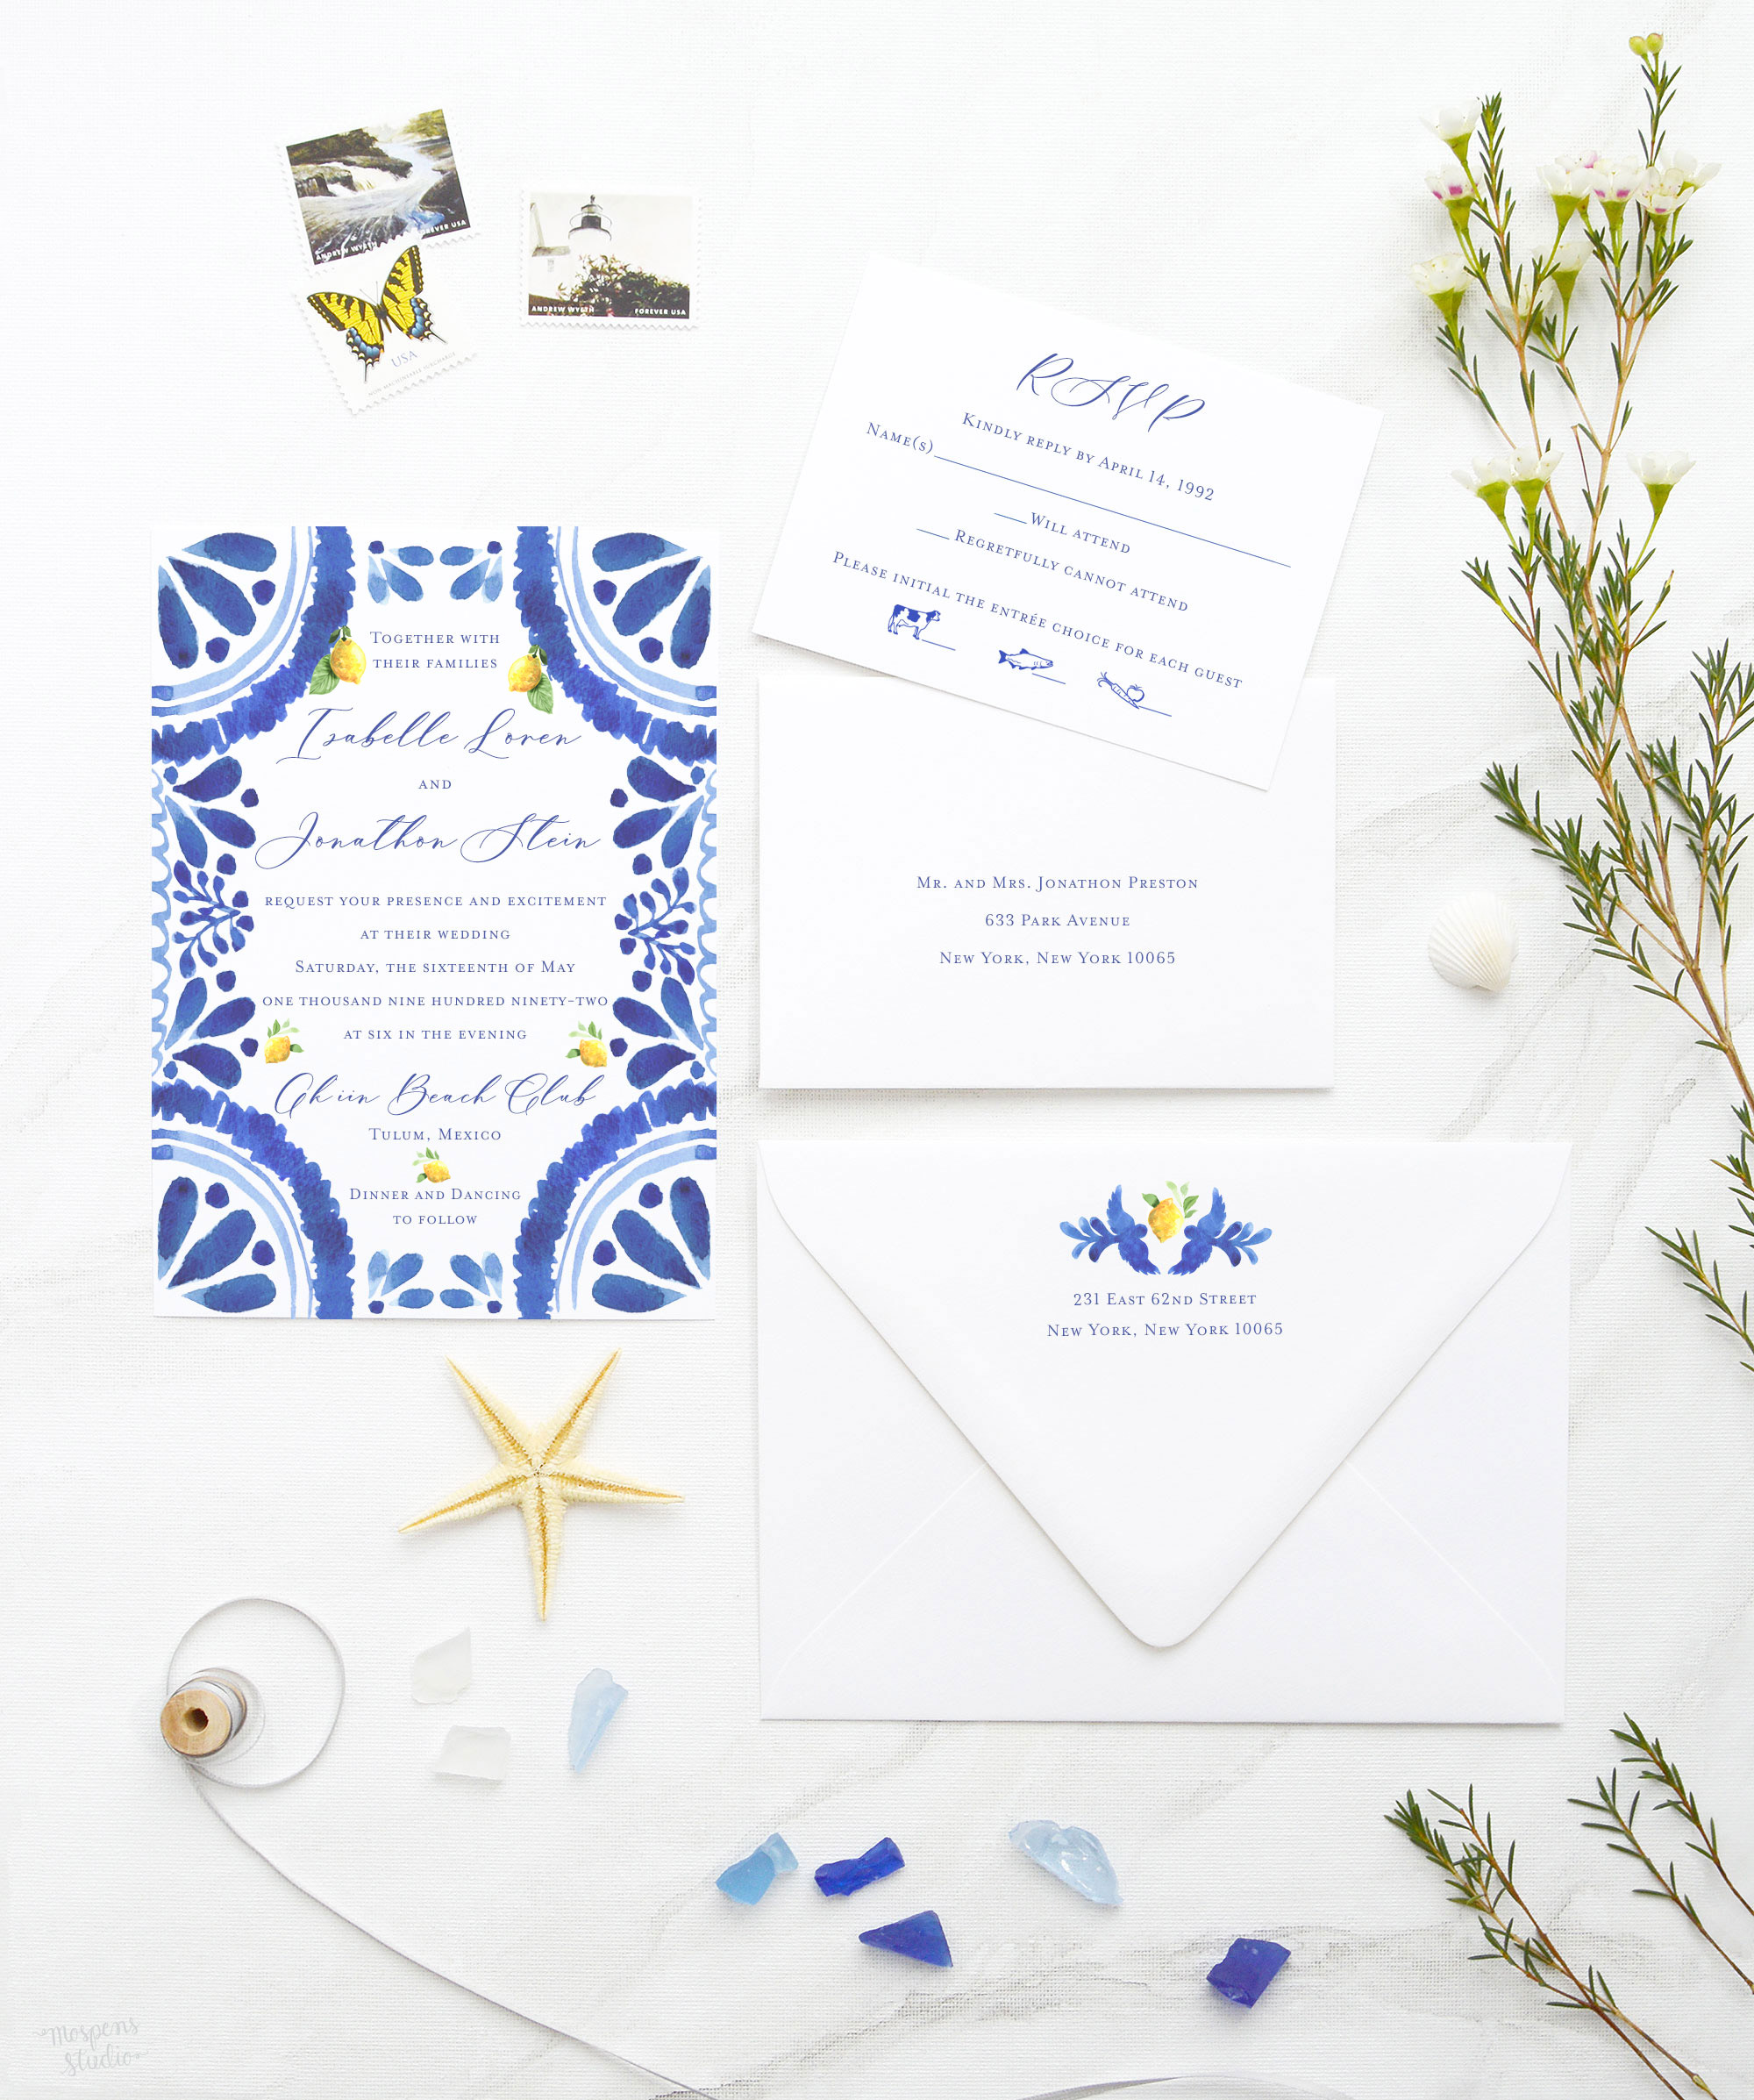 Transparent vellum light blue wedding invitation suite {Crete design}